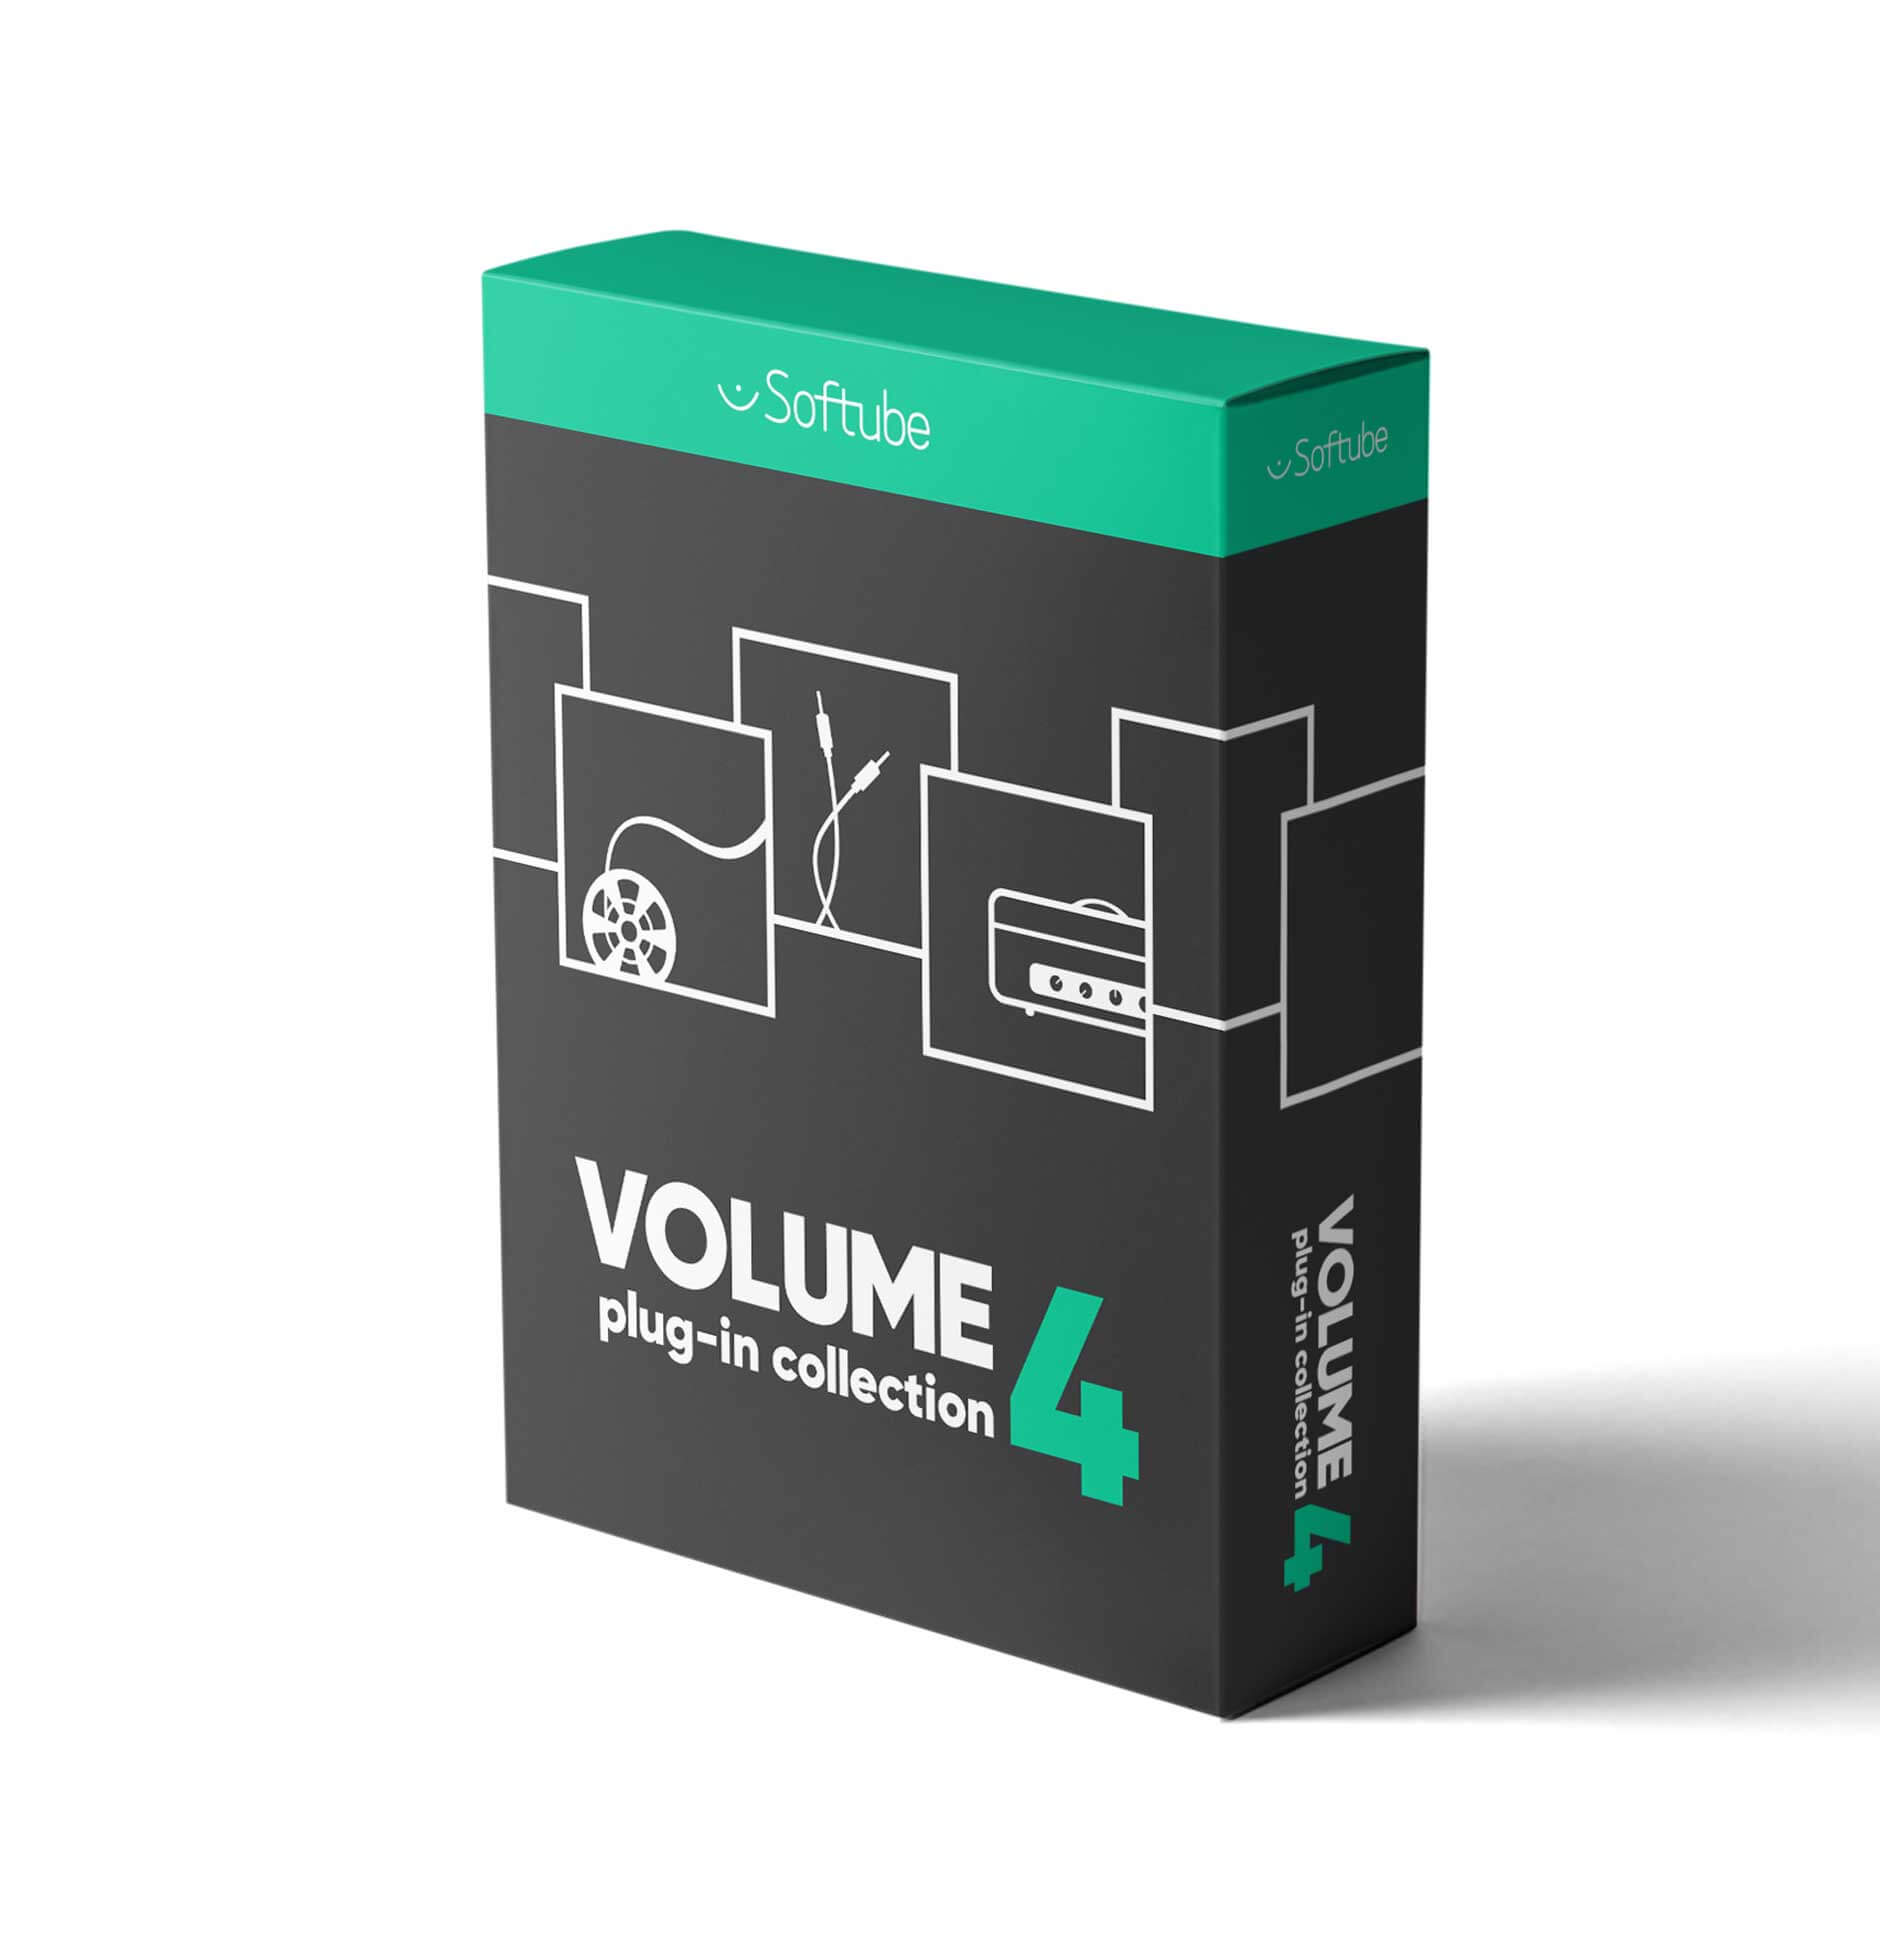 Softube Volume 4 box